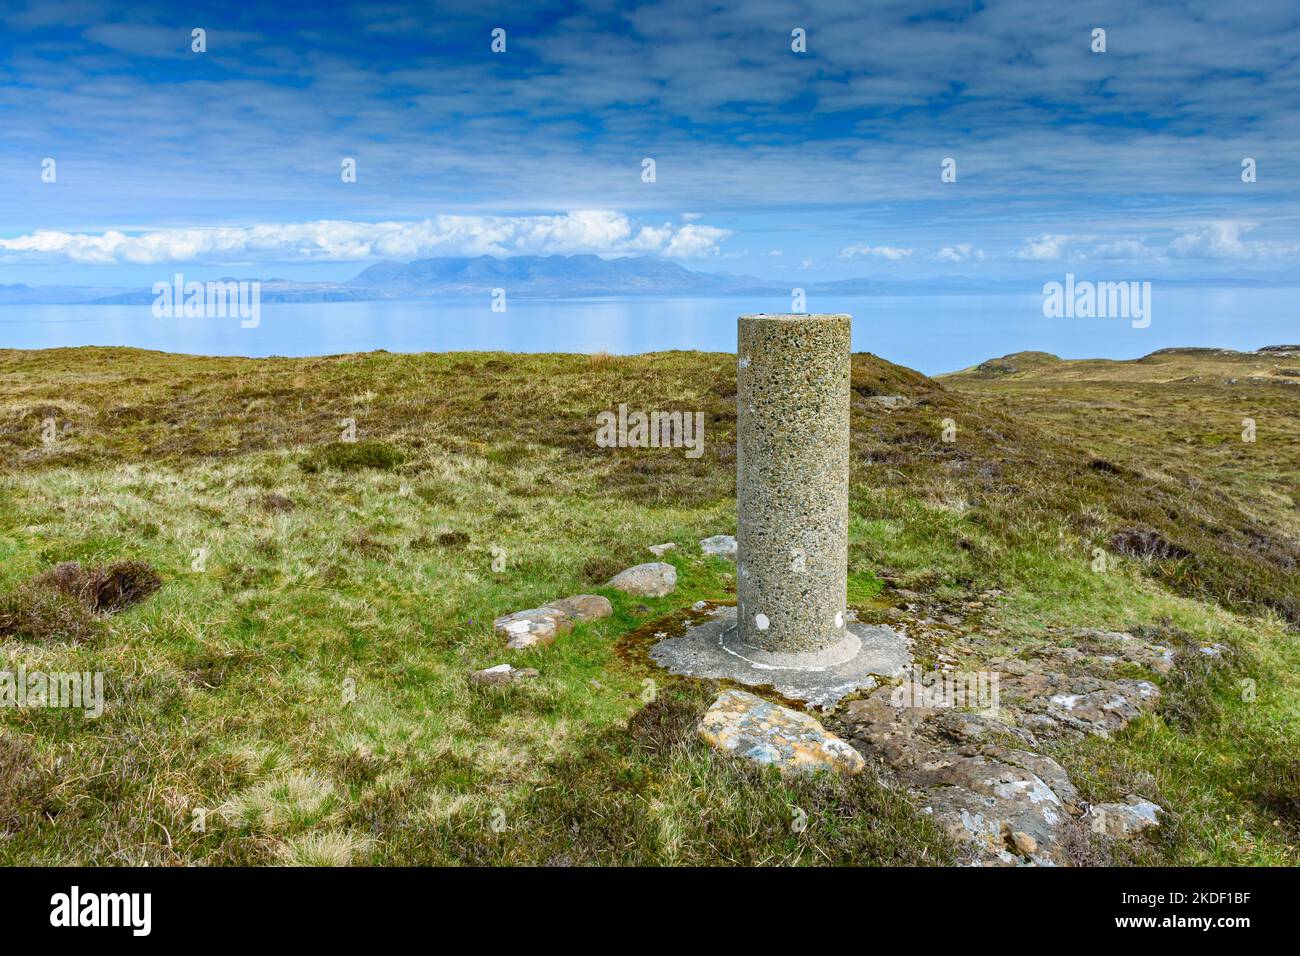 Il punto di trig alla cima di Carn A' Ghaill, il punto più alto dell'isola di canna, Scozia, Regno Unito. Le montagne Cuillin di Skye in lontananza. Foto Stock